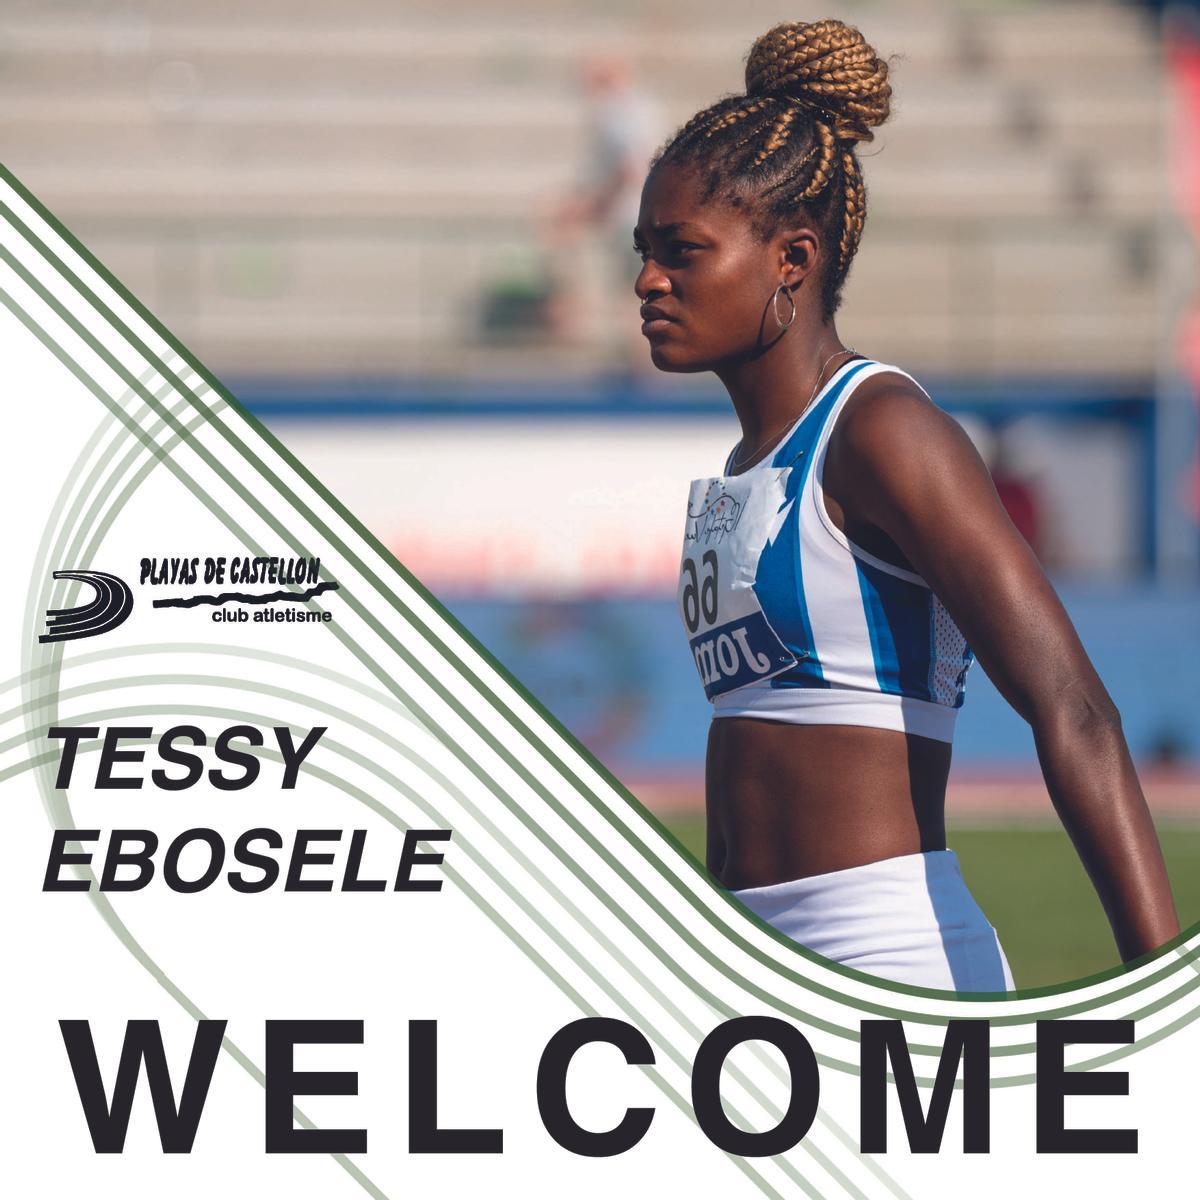 Tessy Ebosele este año ha sido subcampeona del mundo Sub-20 de triple salto, subcampeona de Europa Sub-20 y es una de las atletas con más proyección del atletismo nacional.